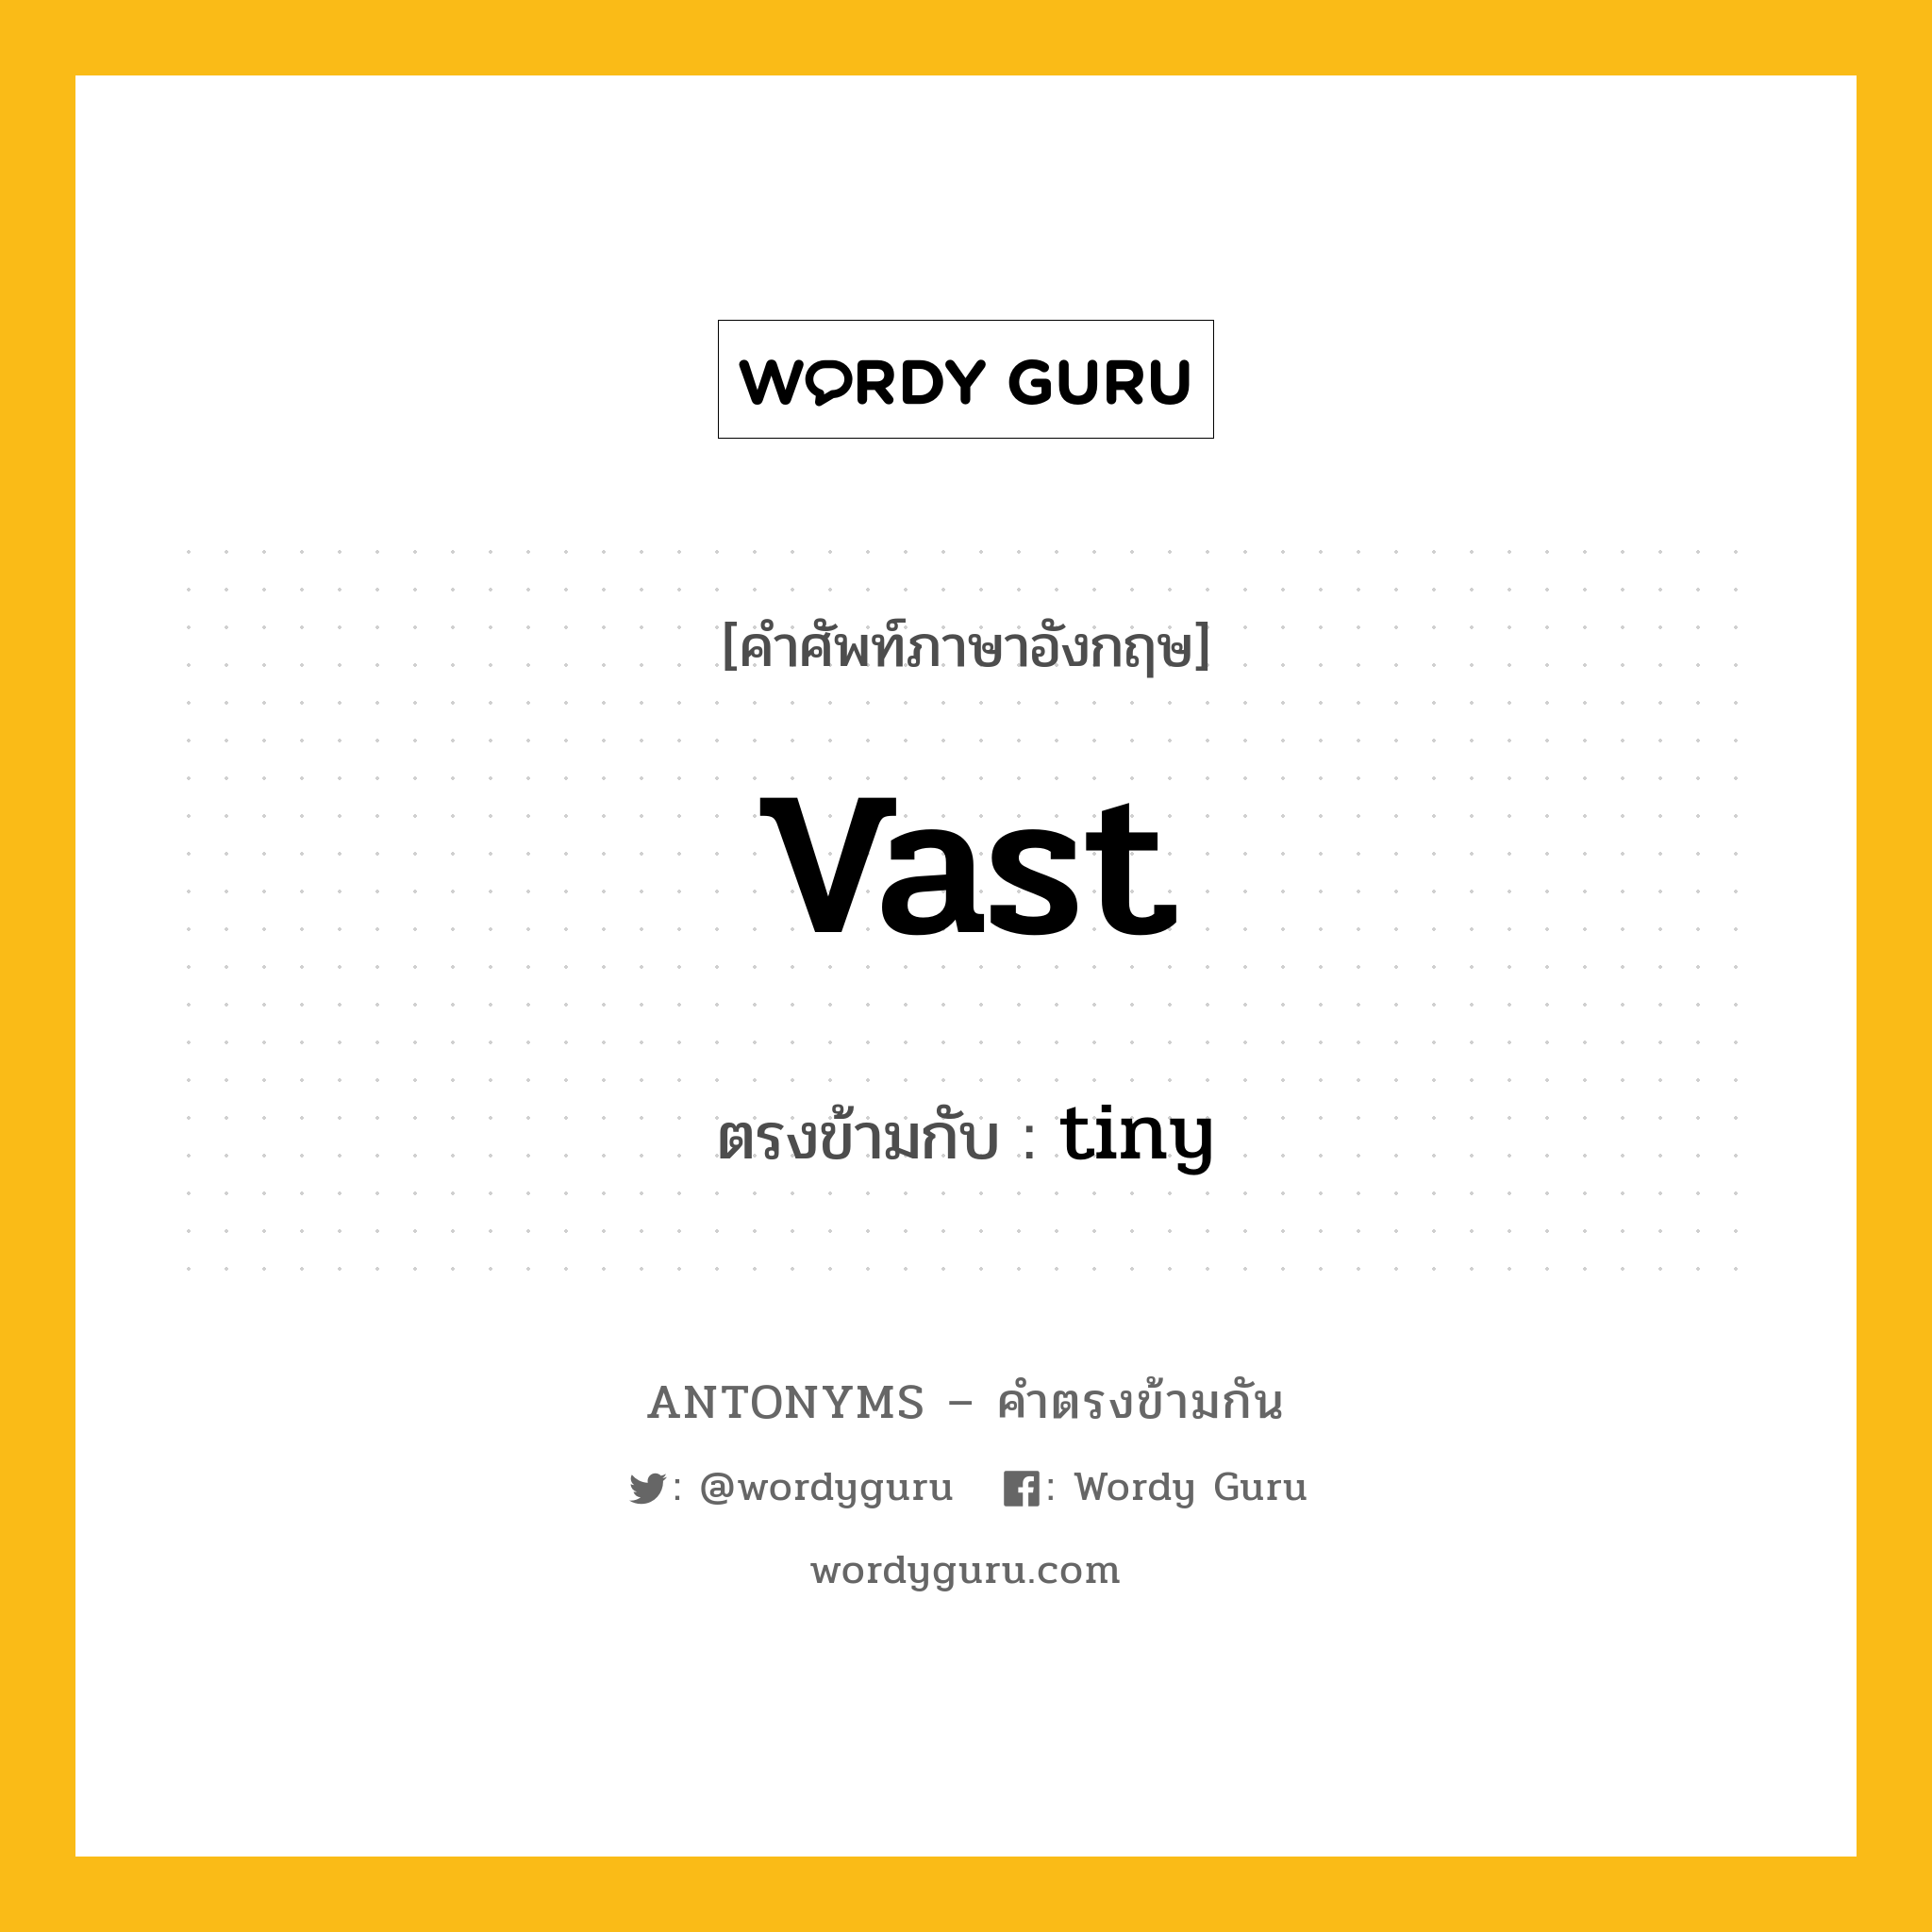 vast เป็นคำตรงข้ามกับคำไหนบ้าง?, คำศัพท์ภาษาอังกฤษ vast ตรงข้ามกับ tiny หมวด tiny